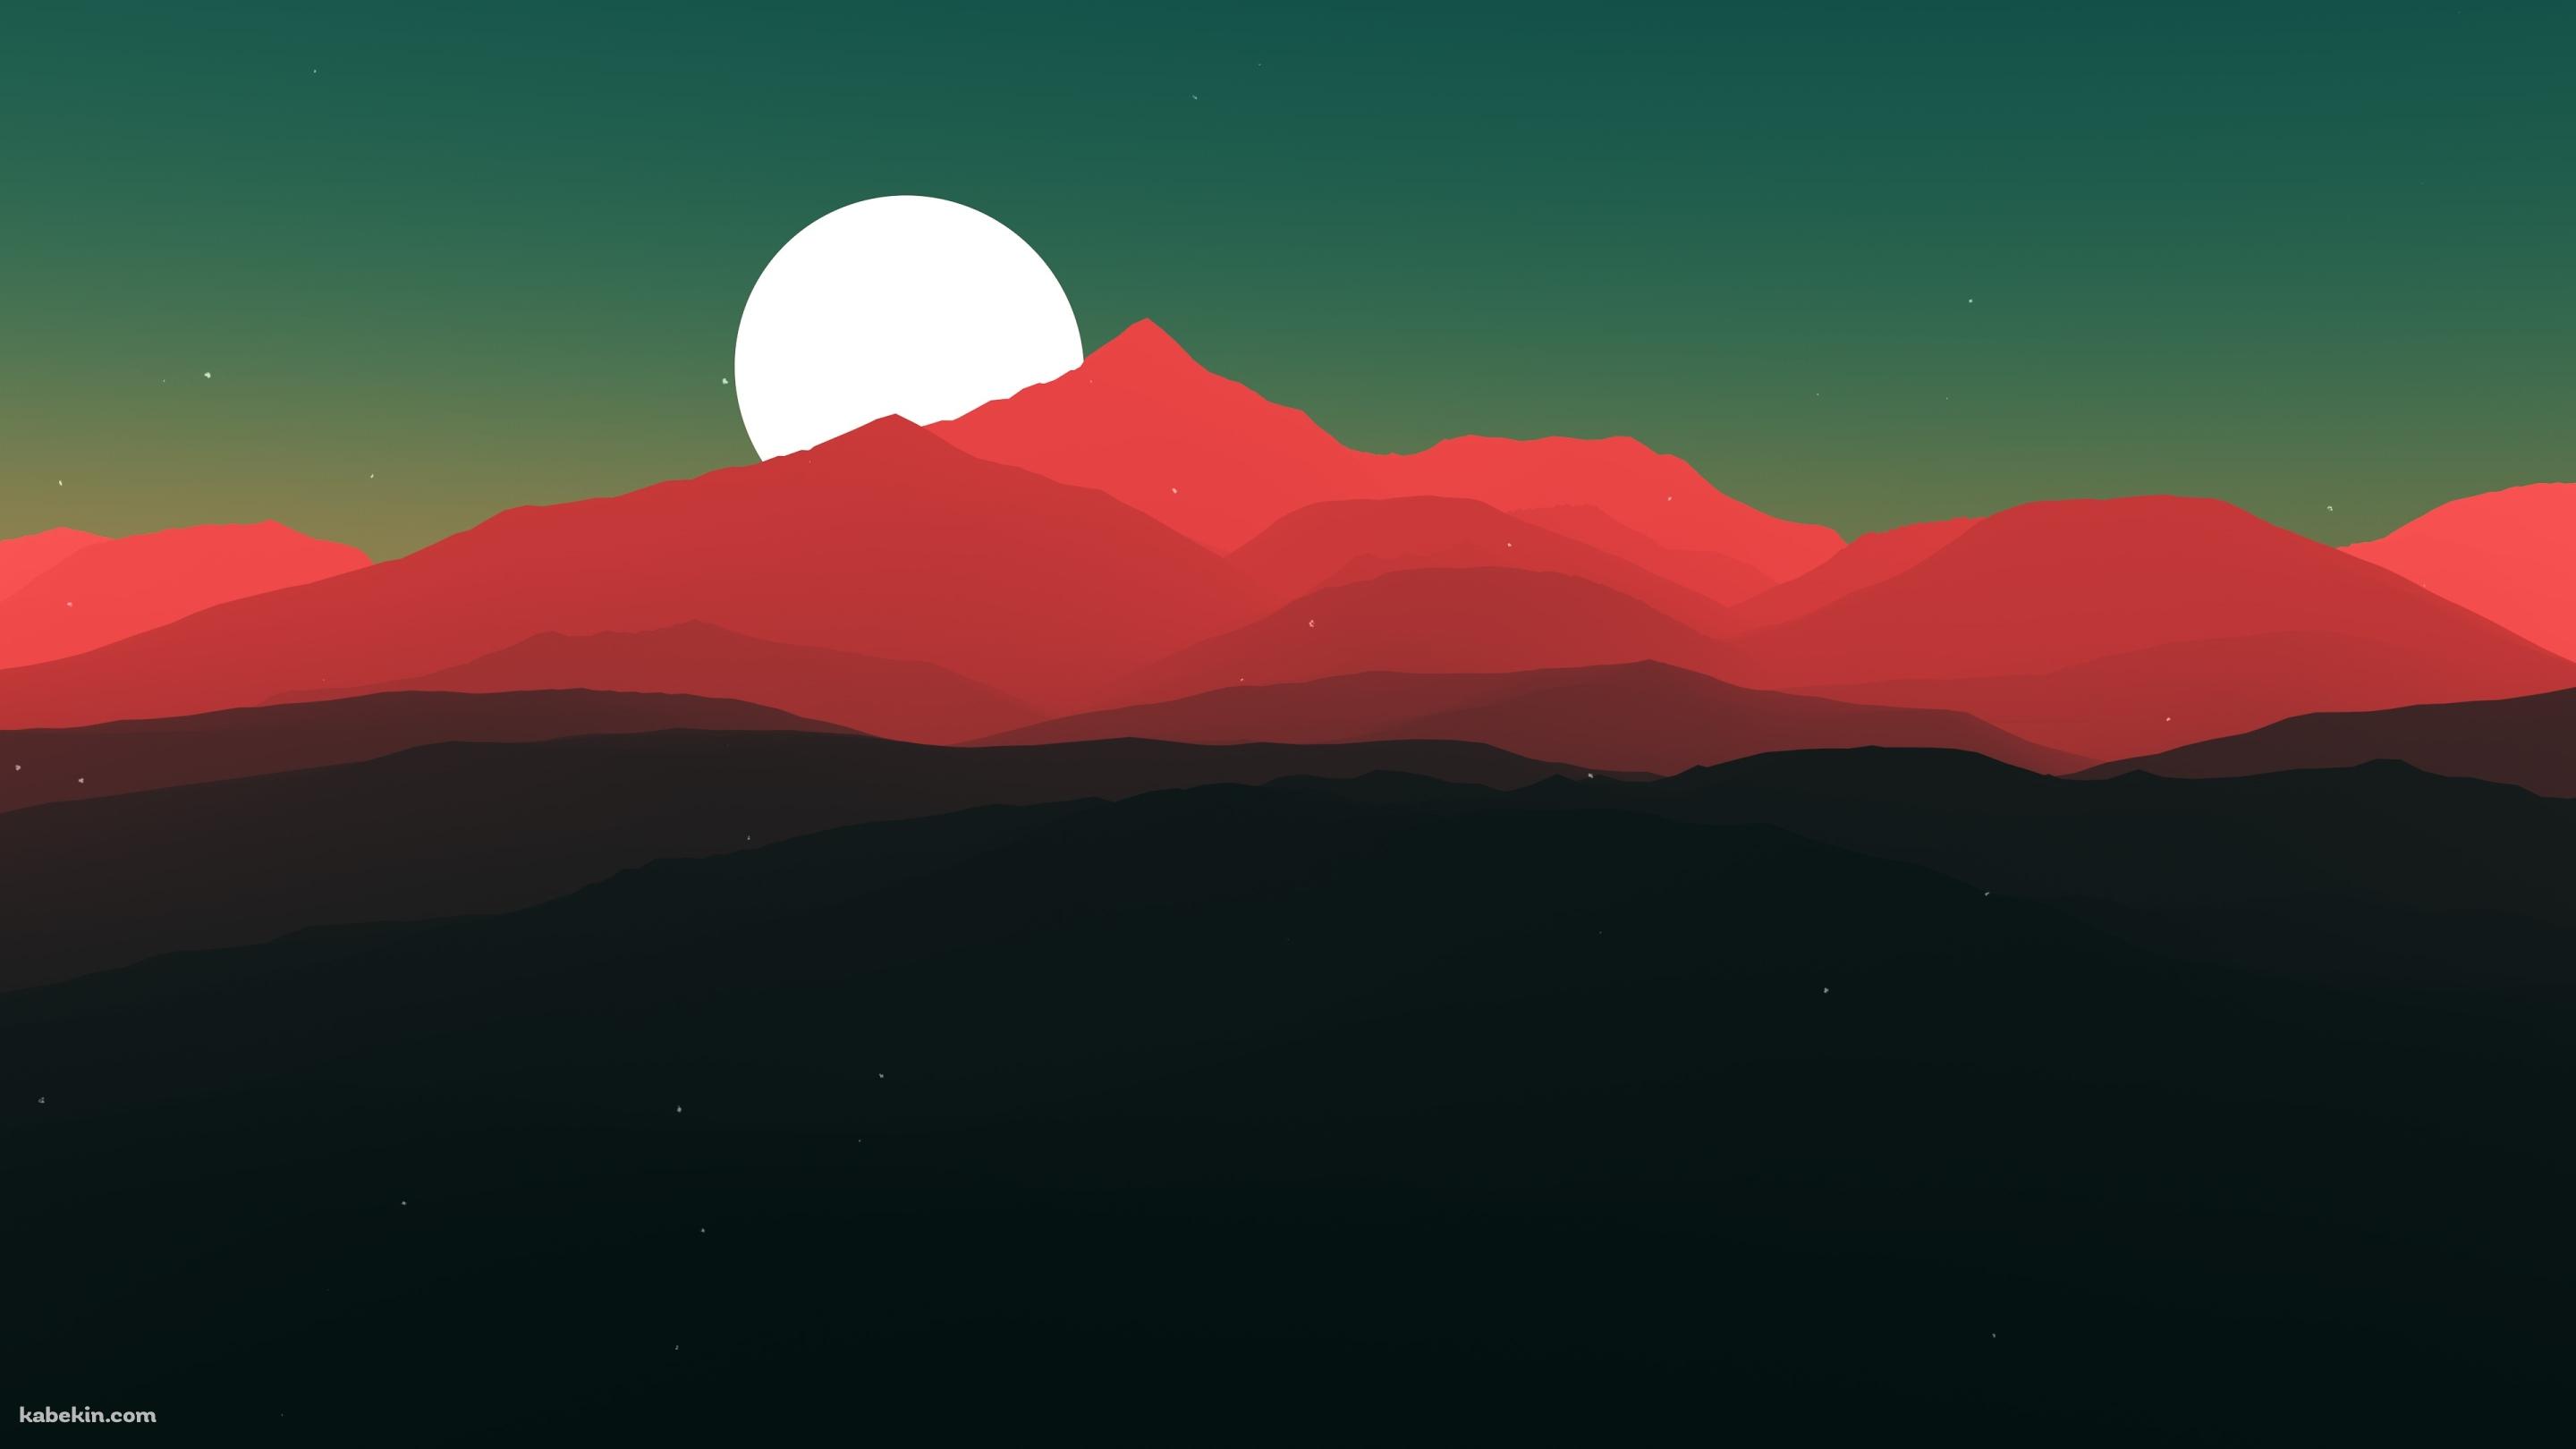 満月と赤い山の壁紙(2880px x 1620px) 高画質 PC・デスクトップ用